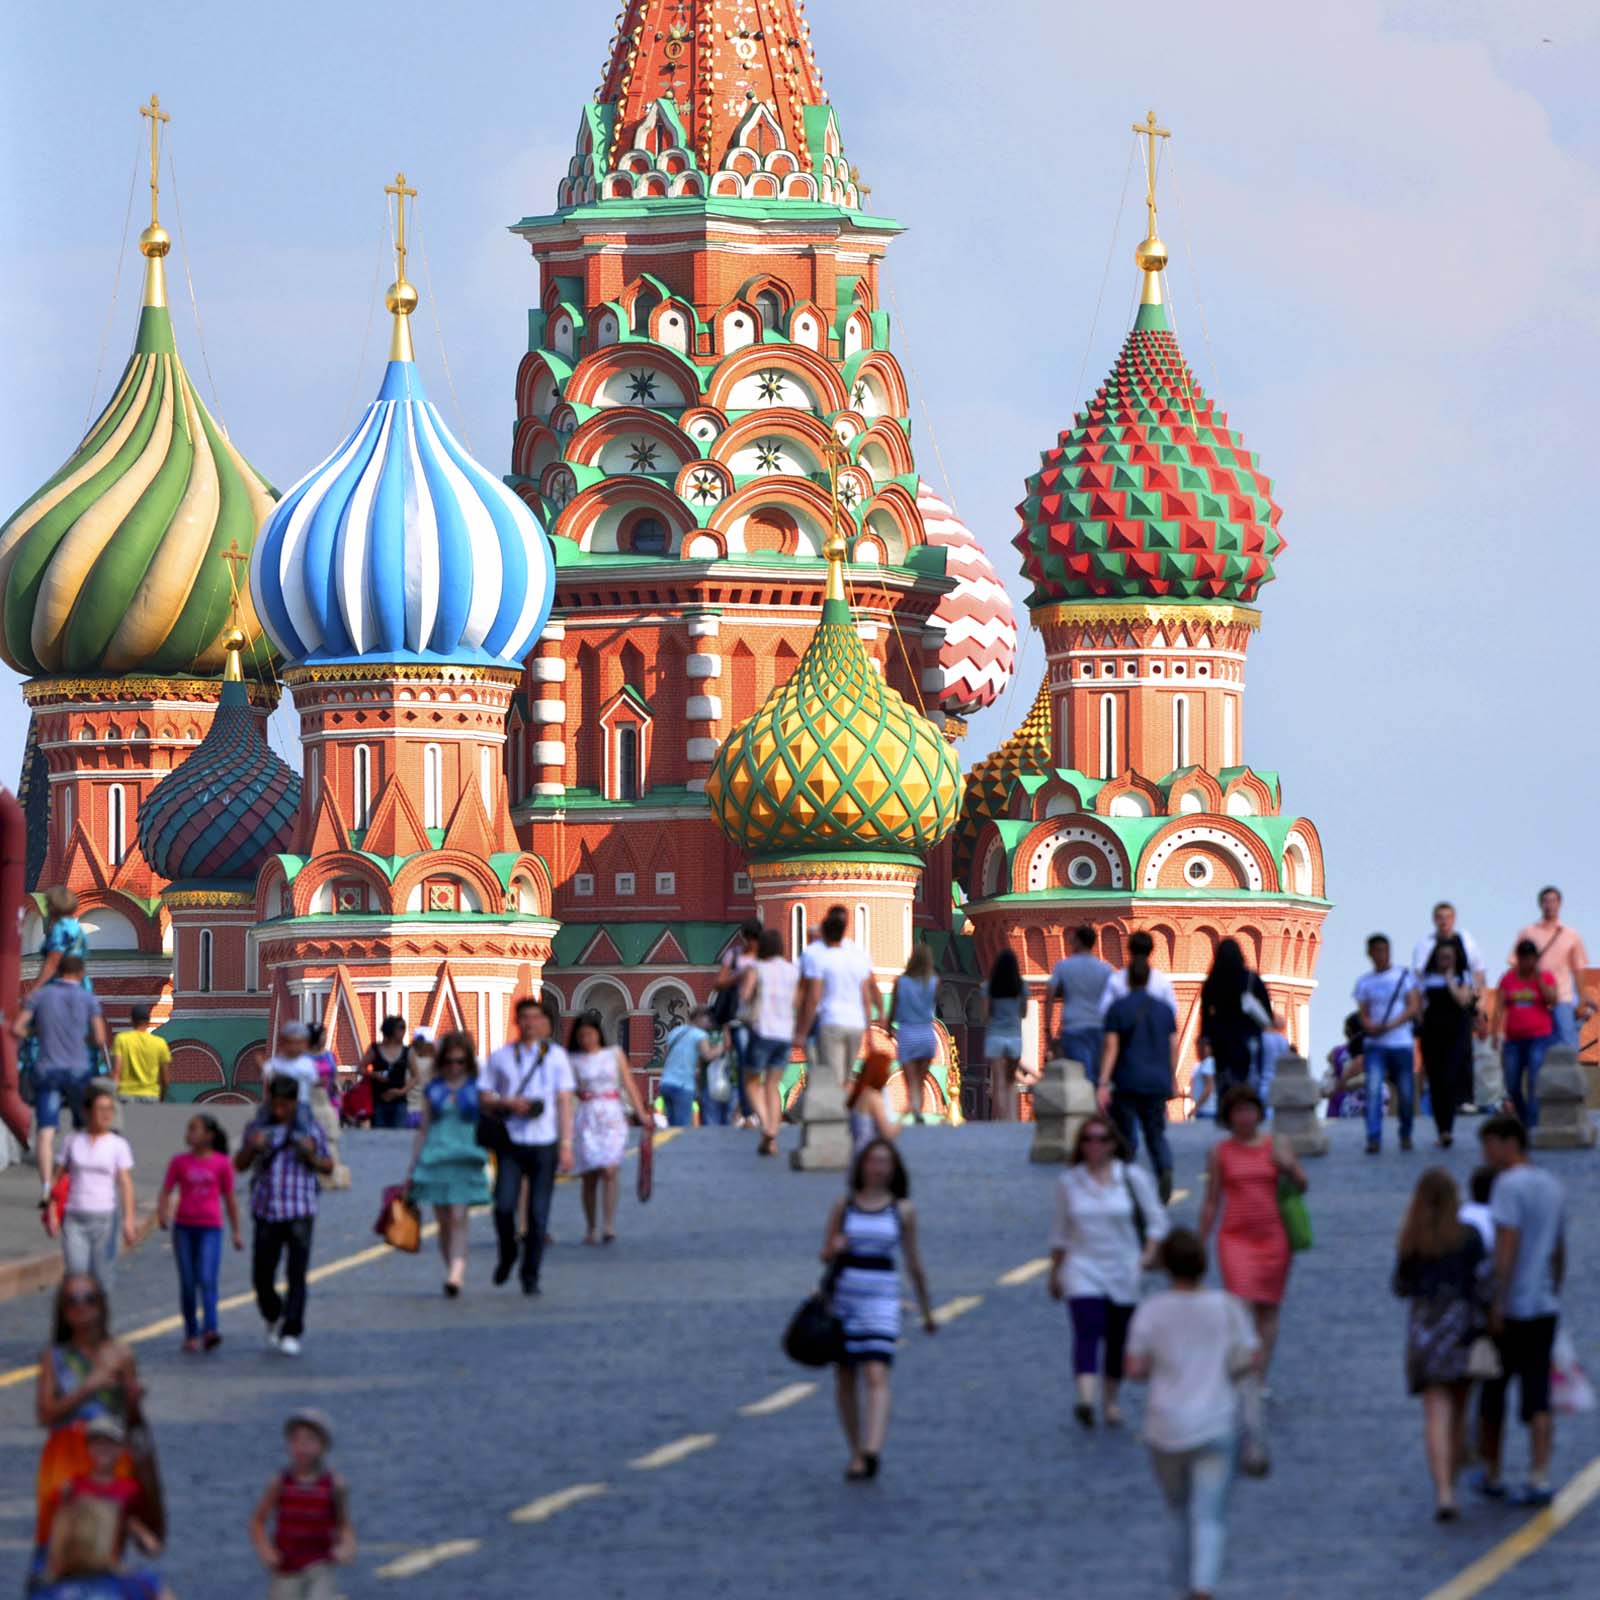 Kryptovaluta er ikke en risiko for stabilitet, konkluderer russisk studie